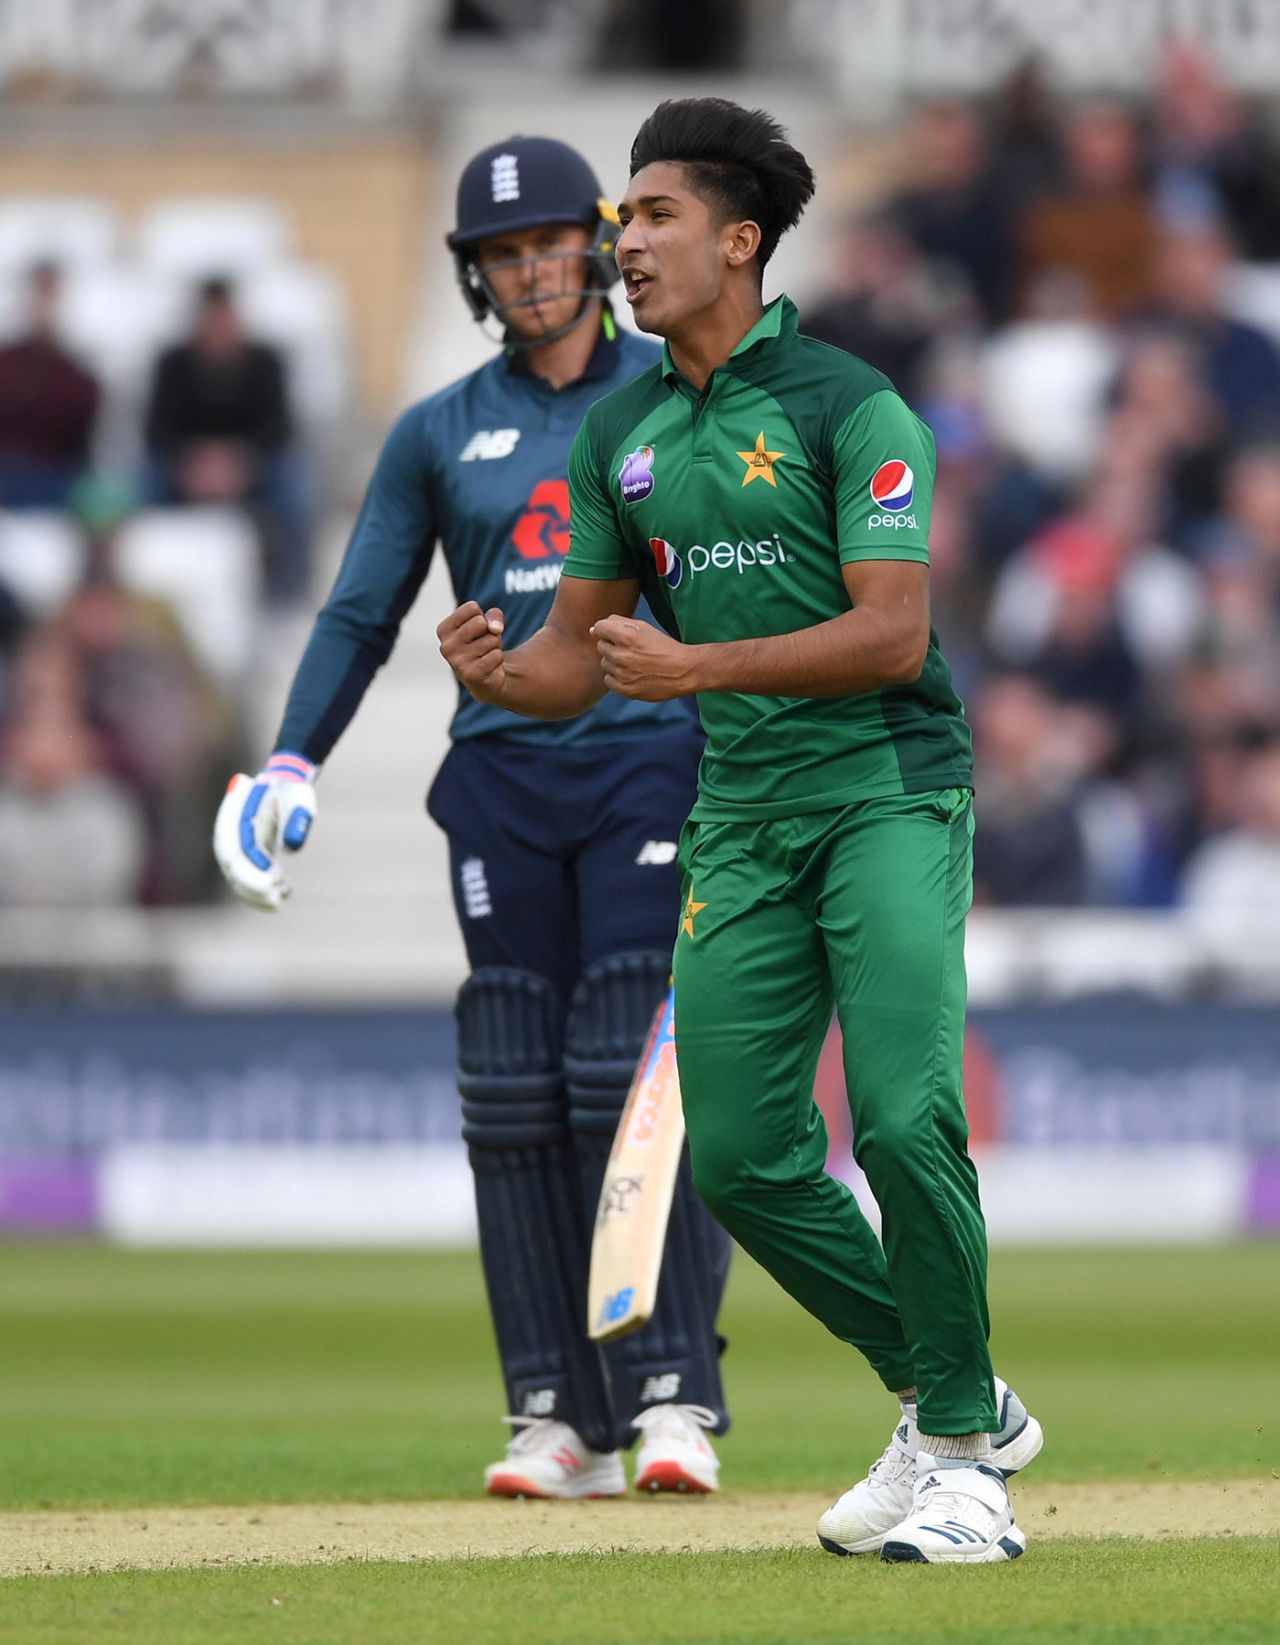 Mohammad Hasnain claimed a breakthrough, England v Pakistan, 4th ODI, Trent Bridge, May 17, 2019